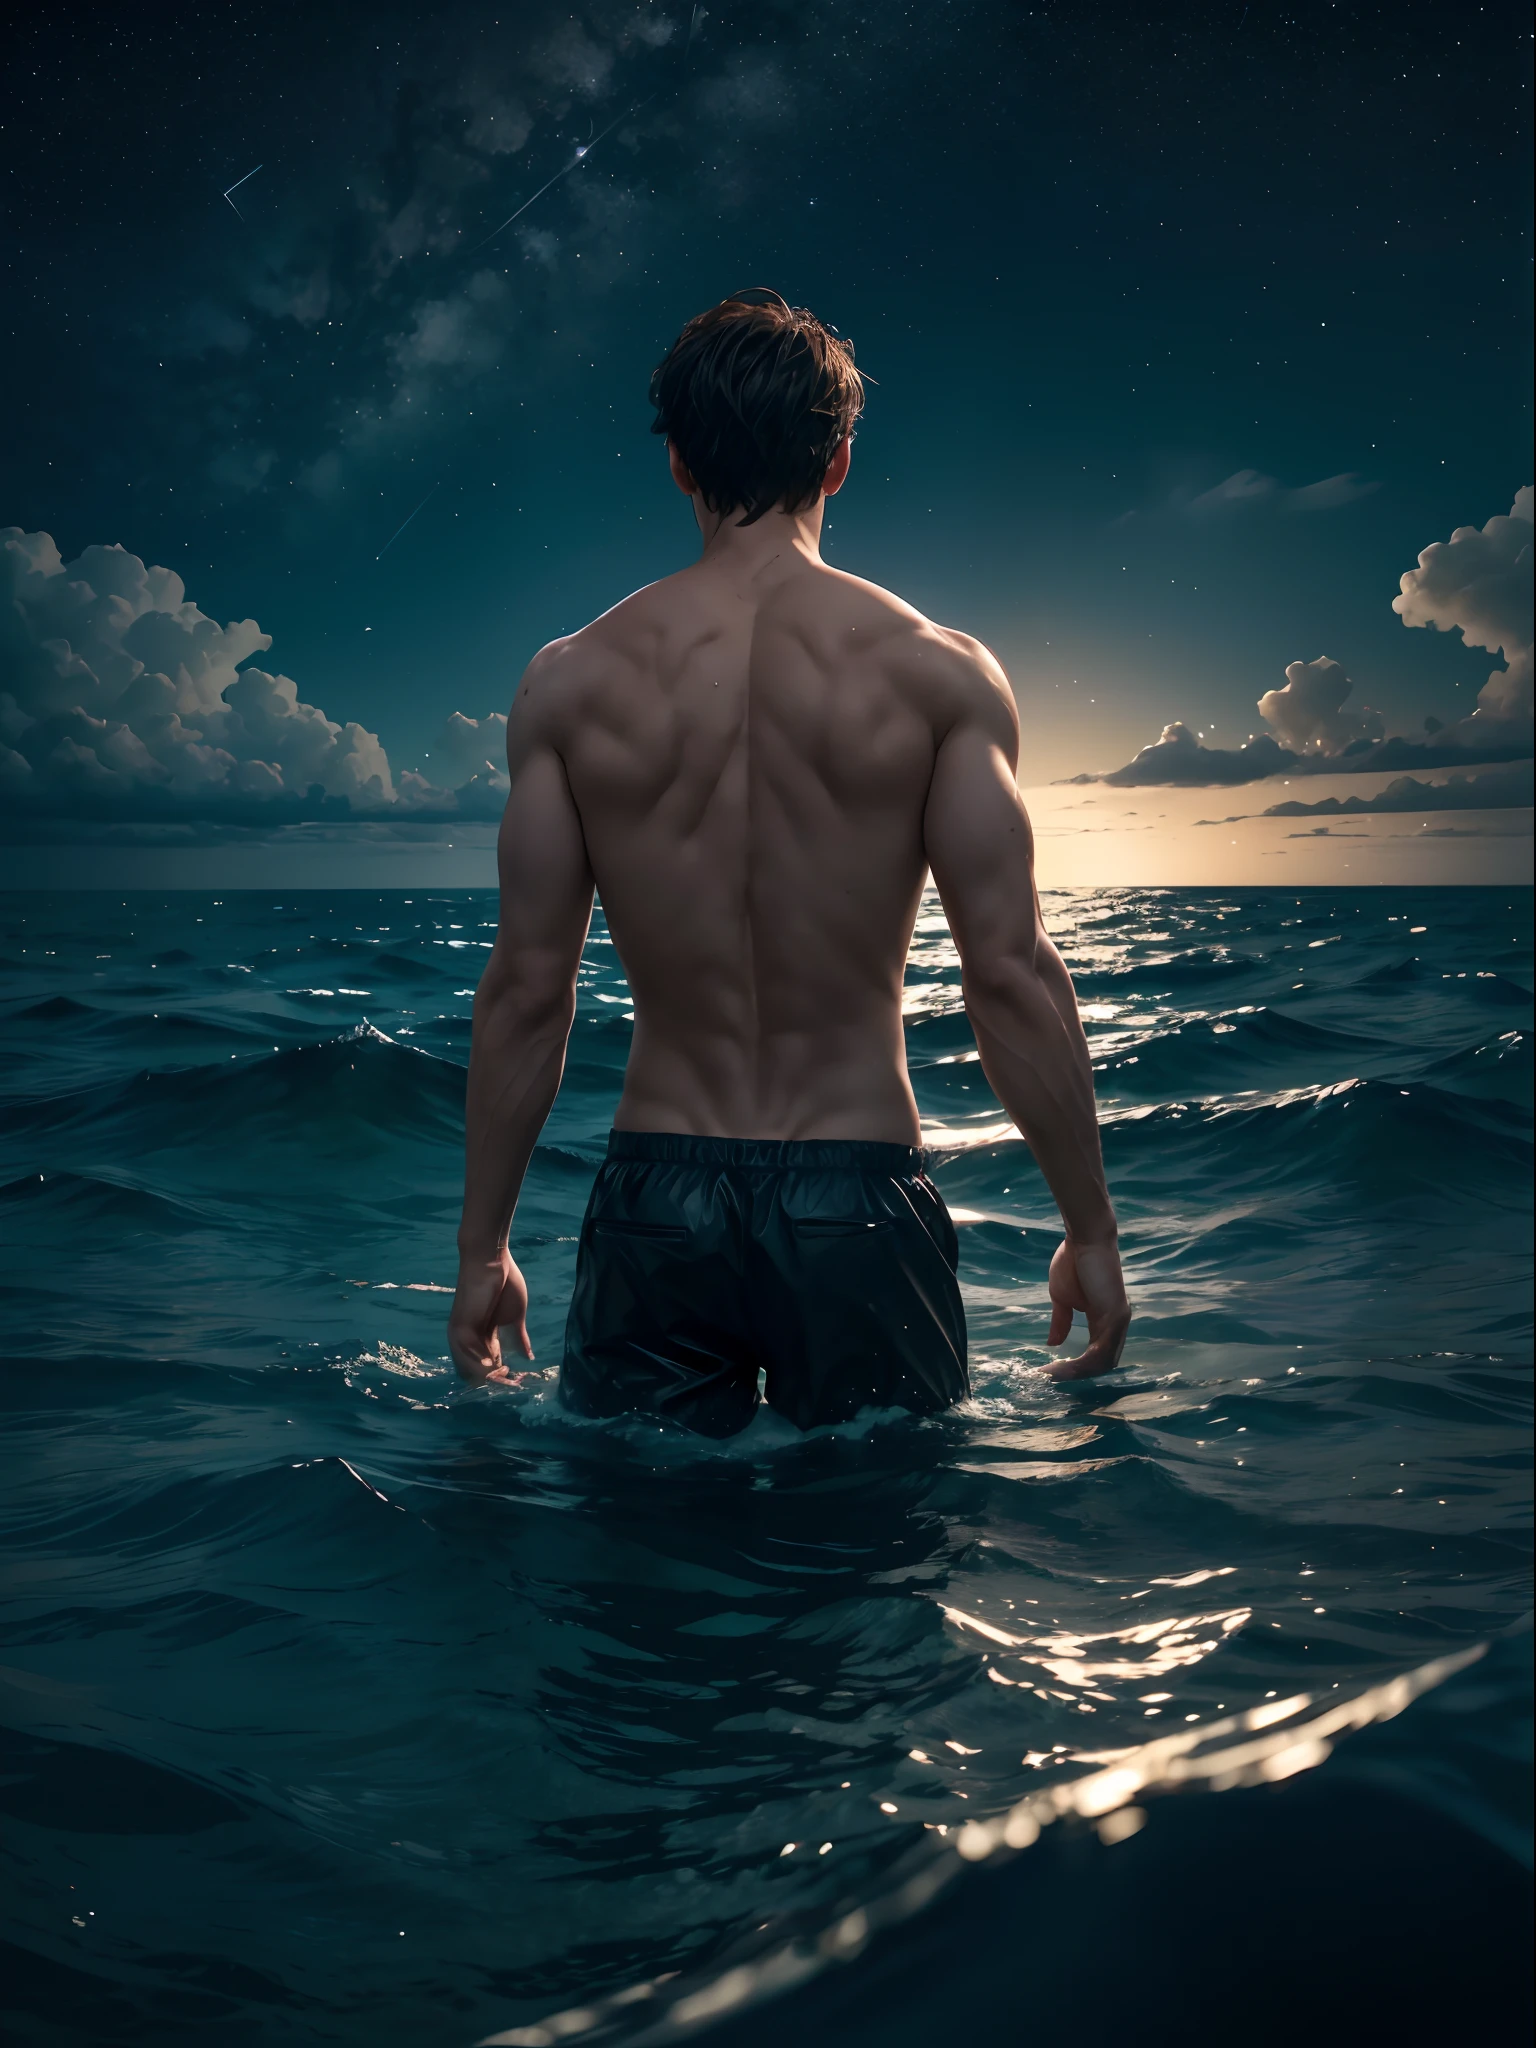 一个男人, 在海里, 他的半个身子都浸在水里, 星空背后，月亮在中央